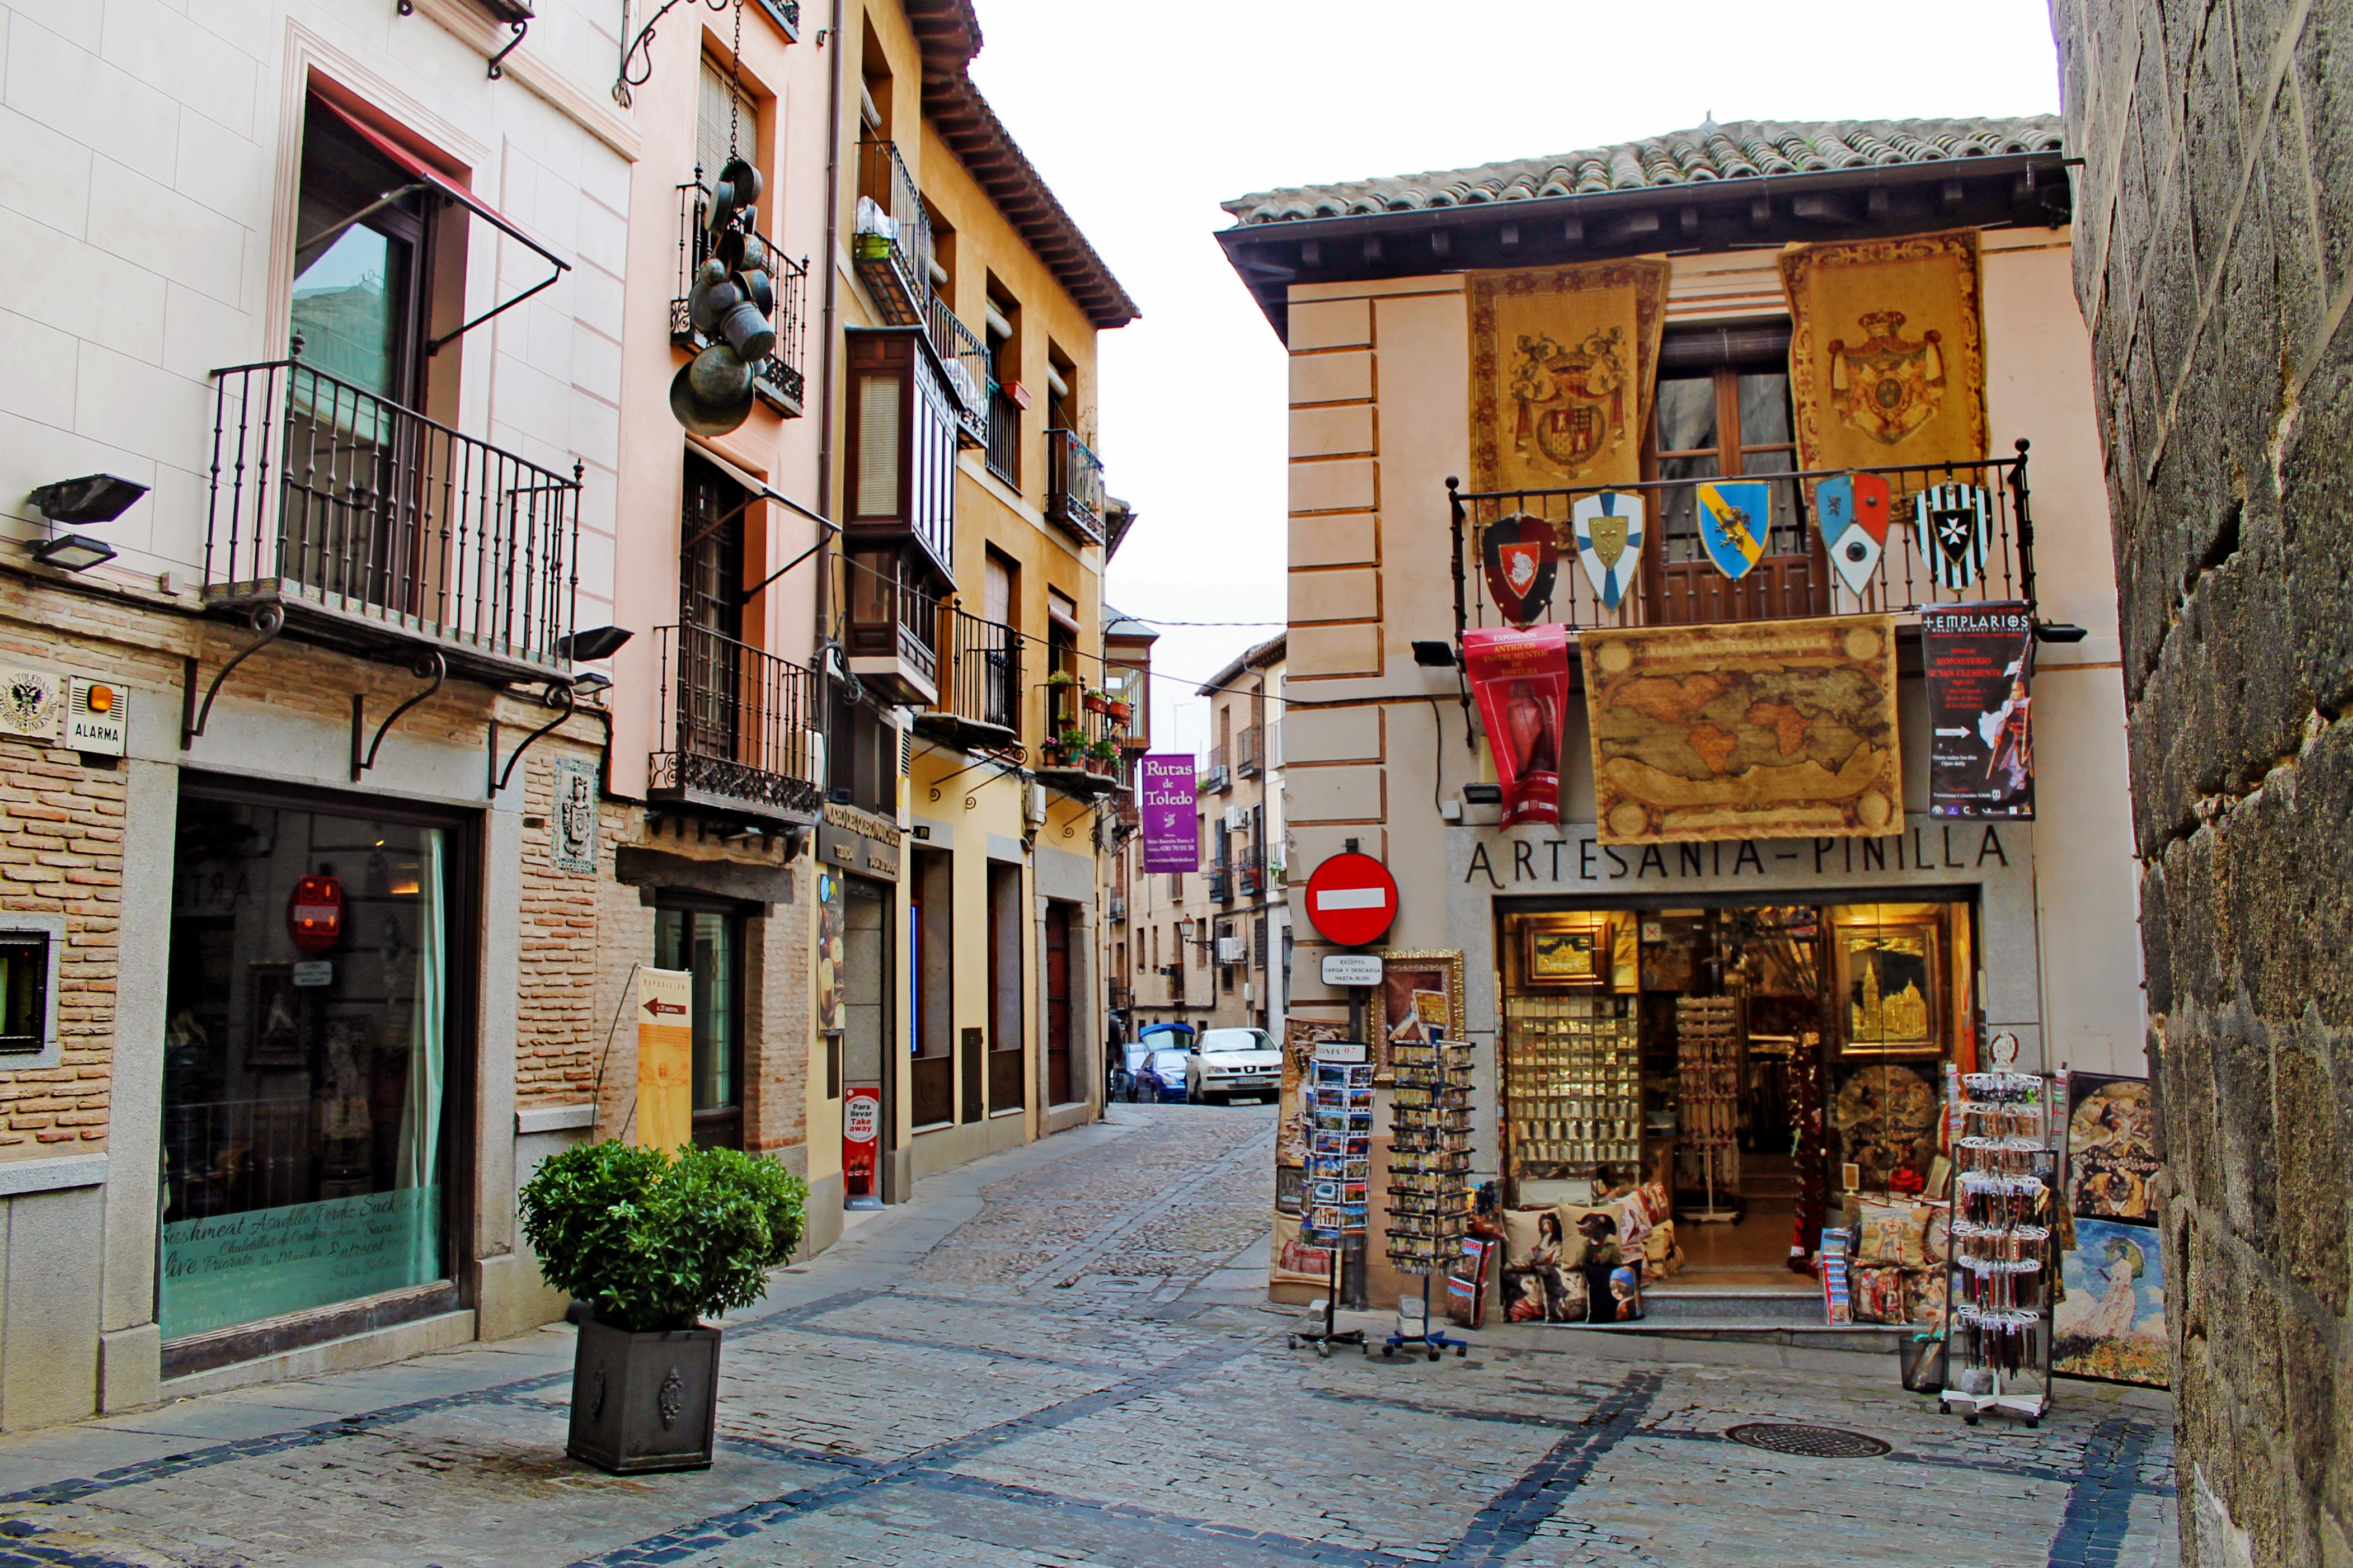 Roteiro de um dia em Toledo, Espanha